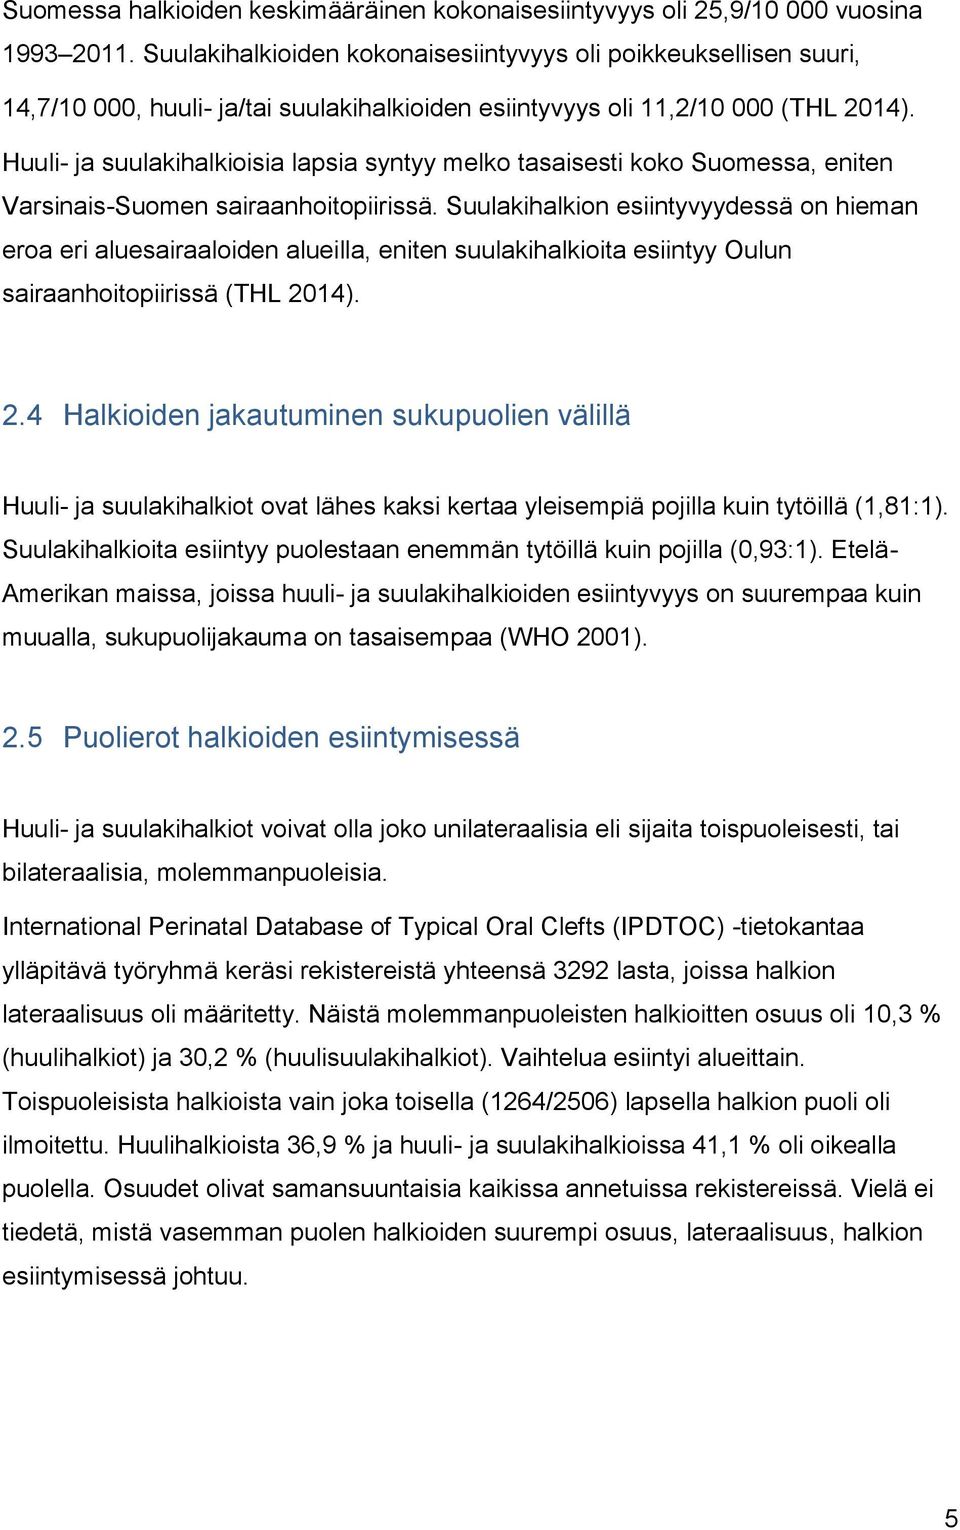 Huuli- ja suulakihalkioisia lapsia syntyy melko tasaisesti koko Suomessa, eniten Varsinais-Suomen sairaanhoitopiirissä.